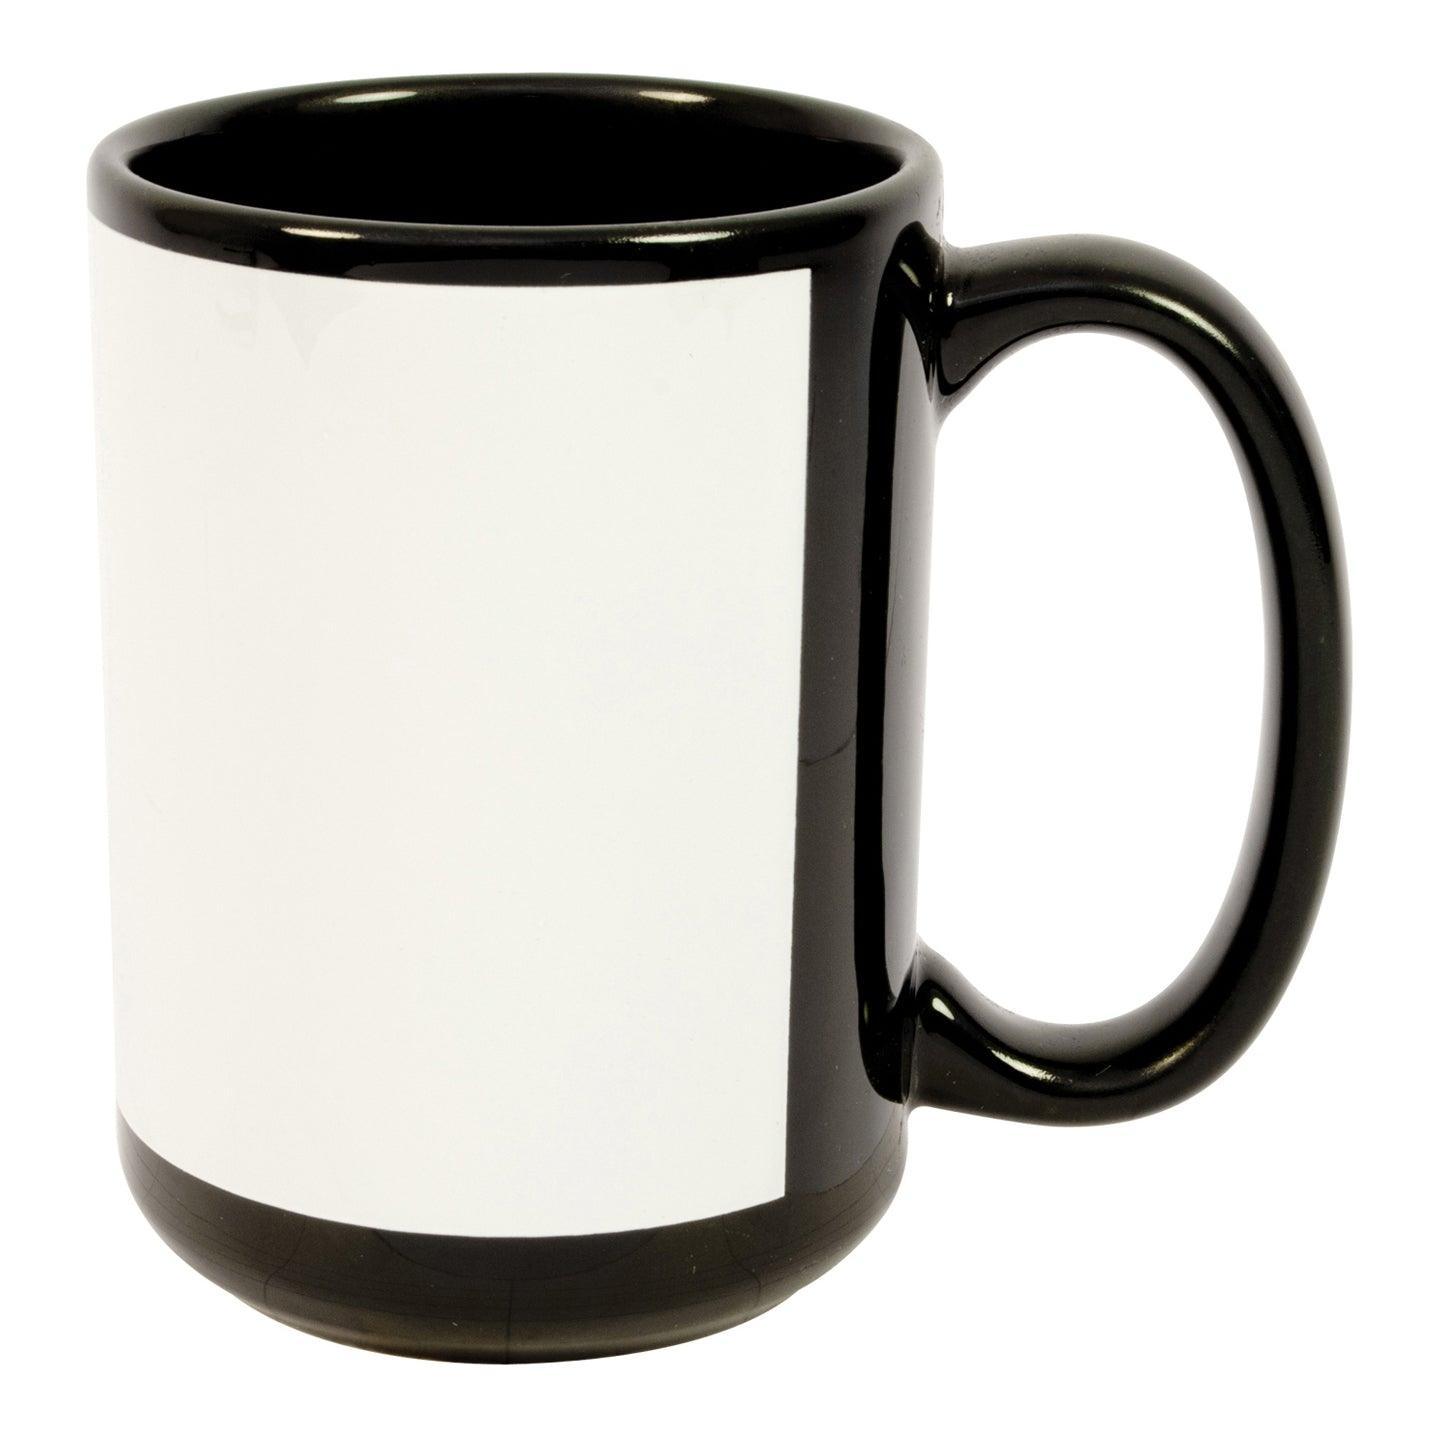 HPN ORCA Premium 12 oz. Sublimation Ceramic Latte Mug - 36 per Case